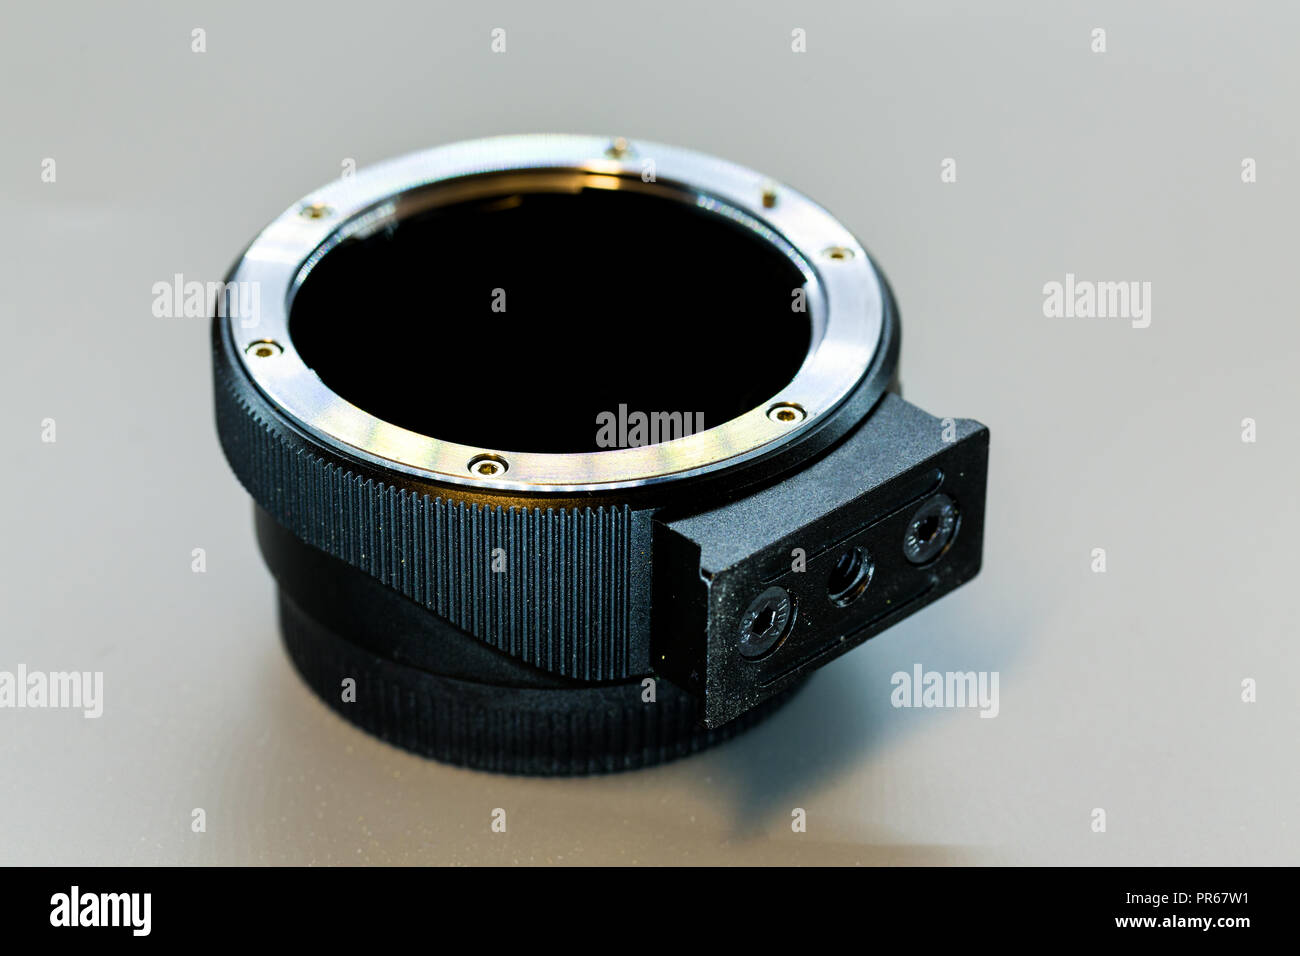 Adaptateur d'objectif téléconvertisseur sur arrière-plan, l'objectif de la caméra adaptateur pour un reflex numérique Banque D'Images